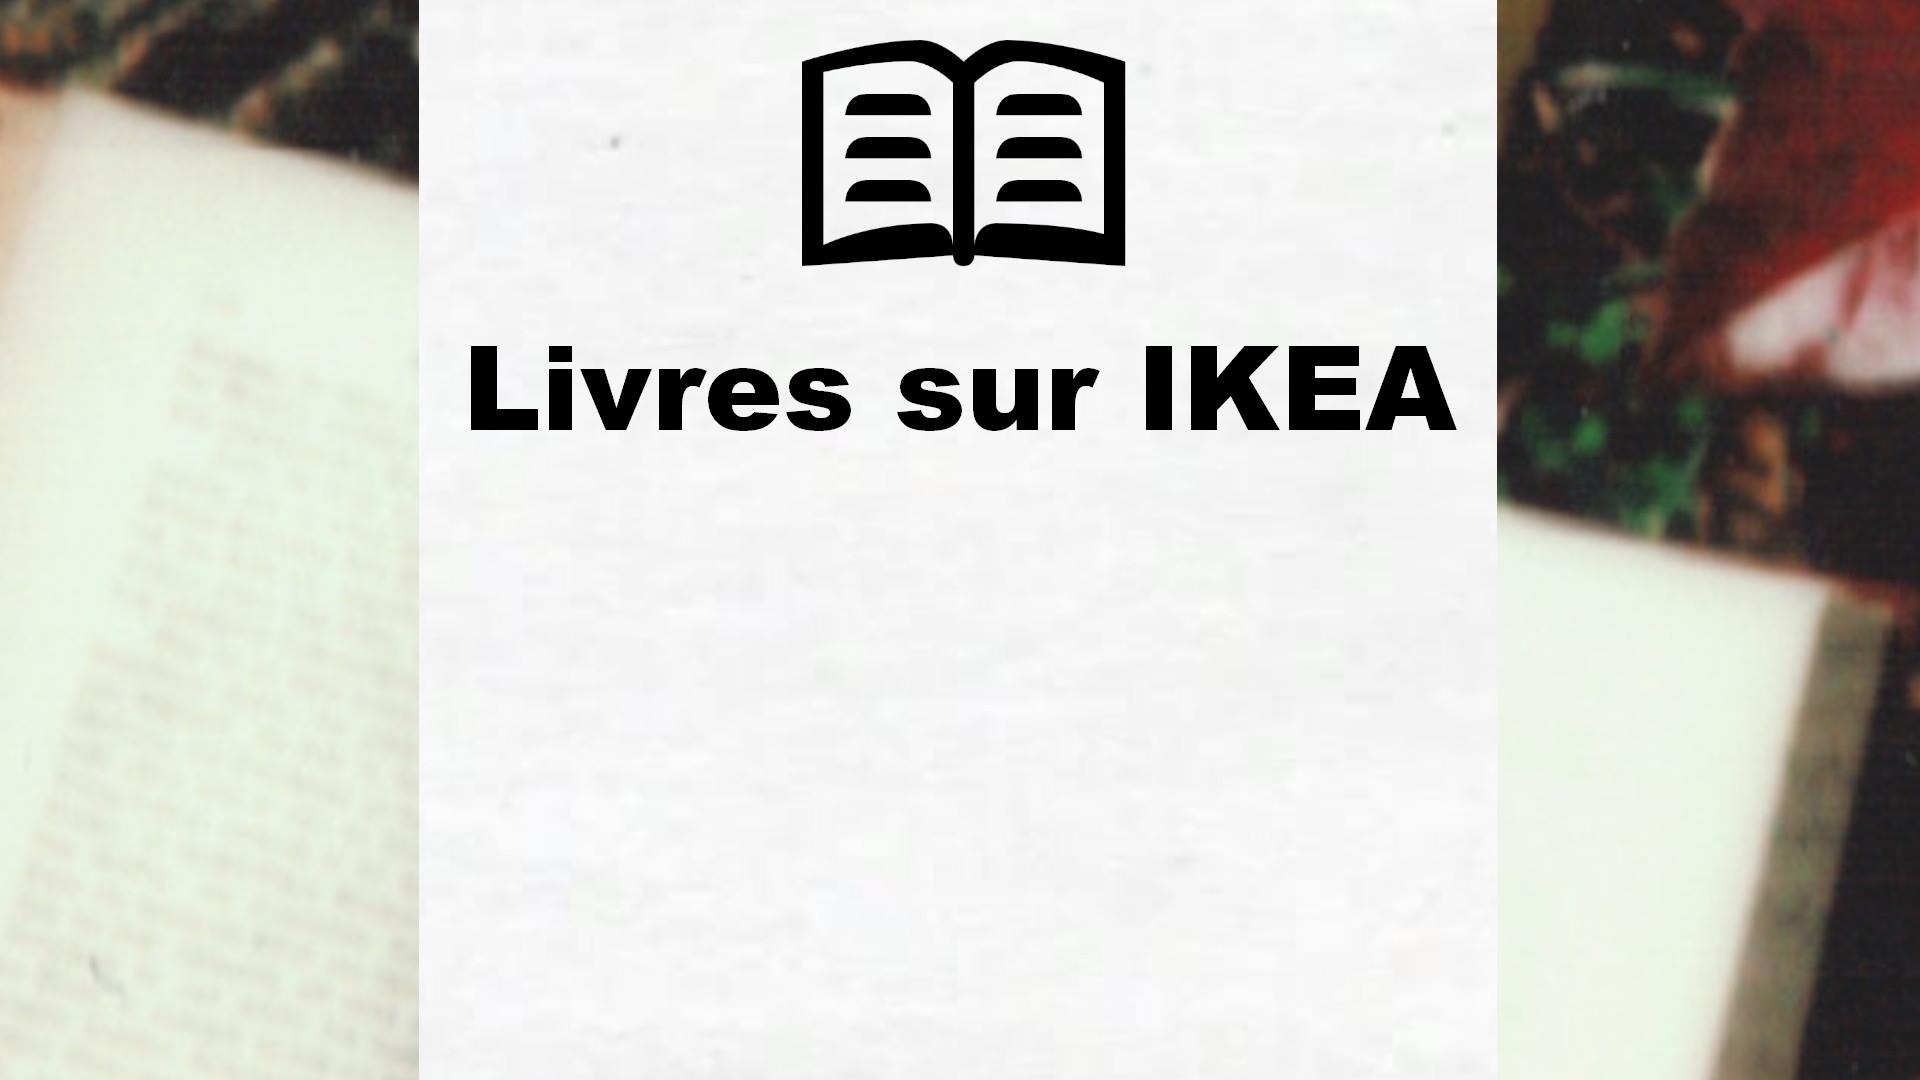 Livres sur IKEA